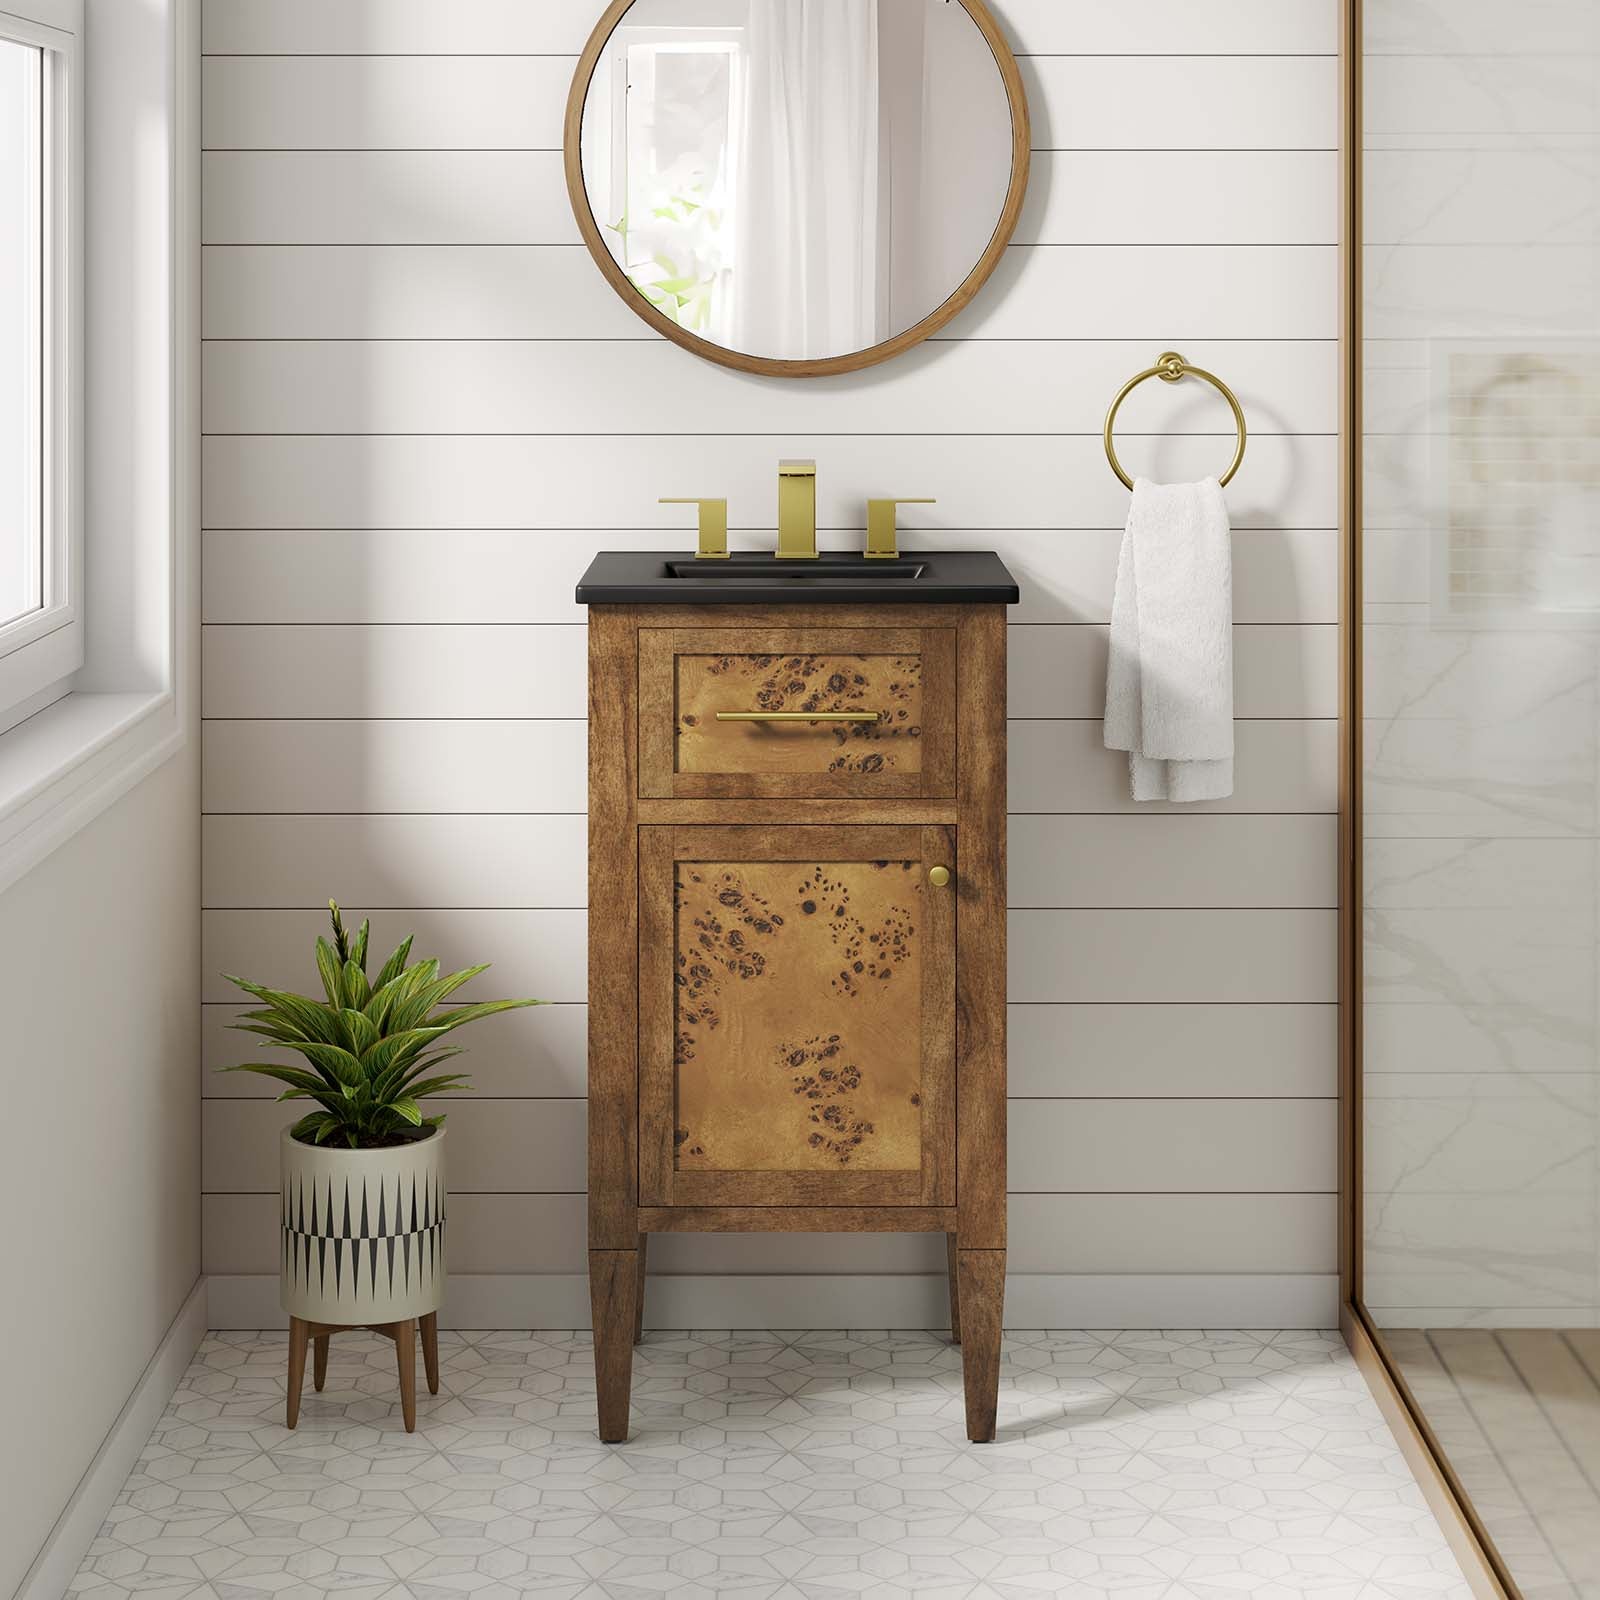 One - Elysian 18" Wood Bathroom Vanity